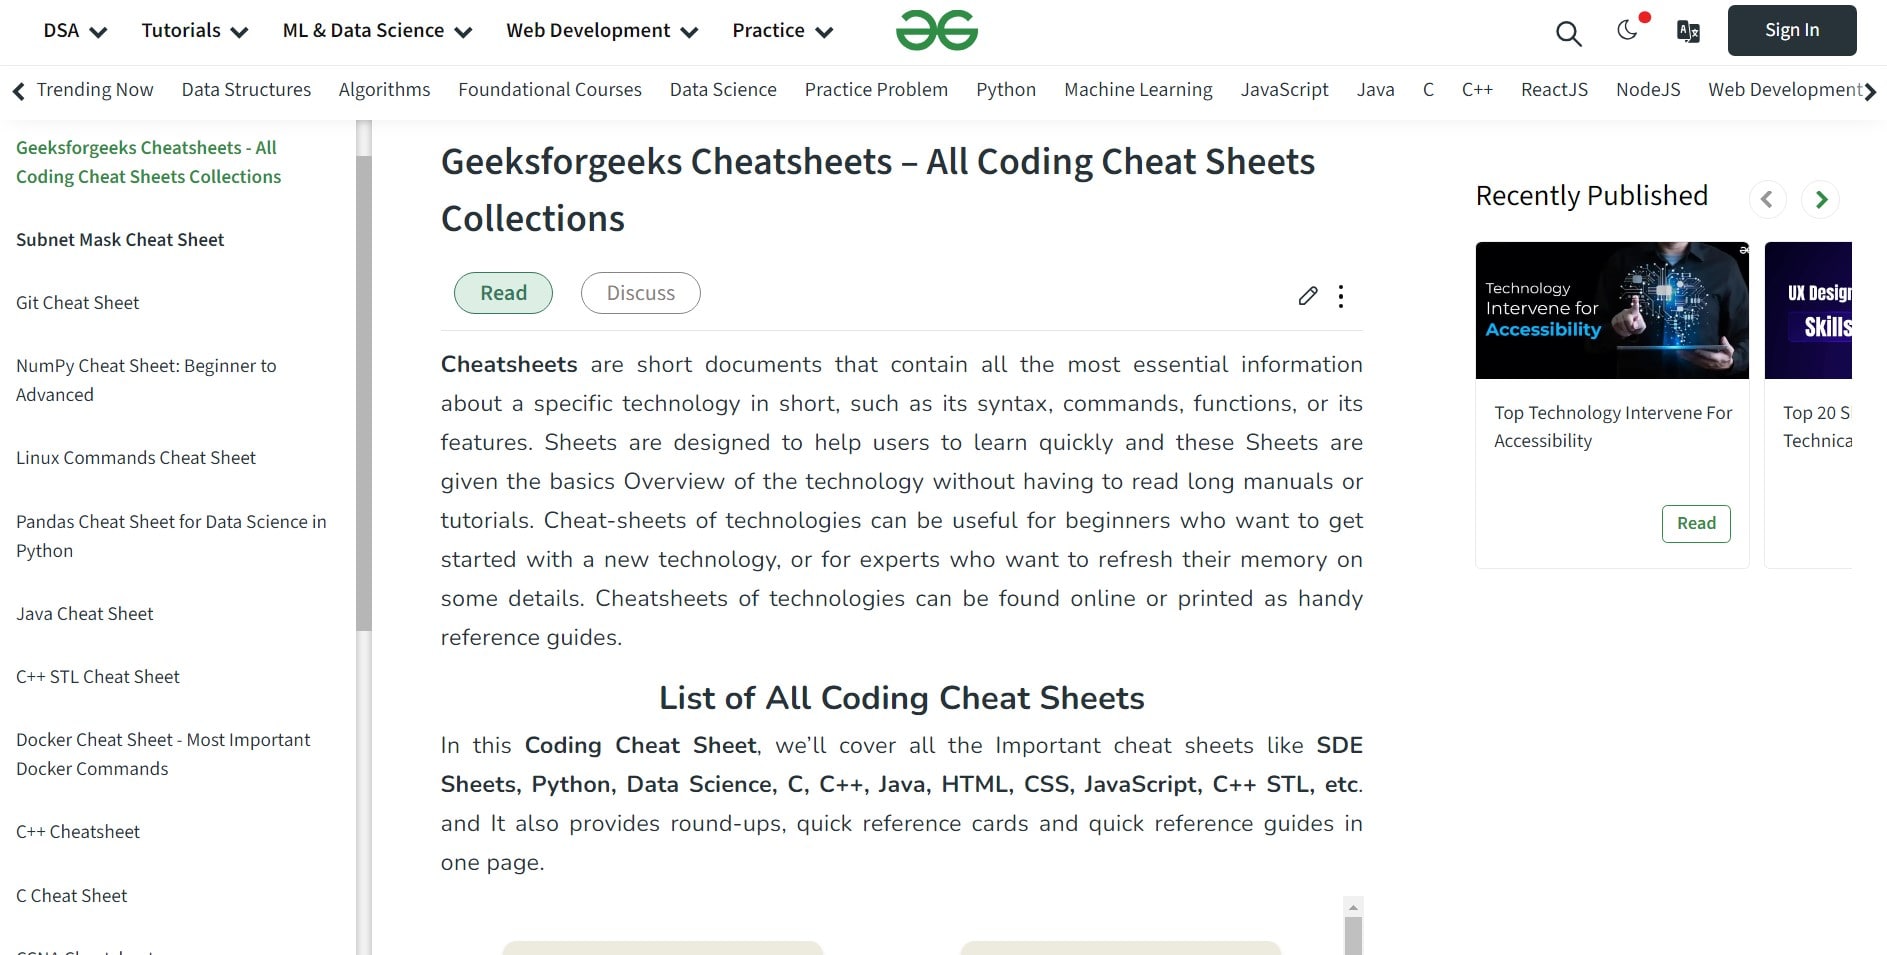 Geeksforgeeks Cheatsheets